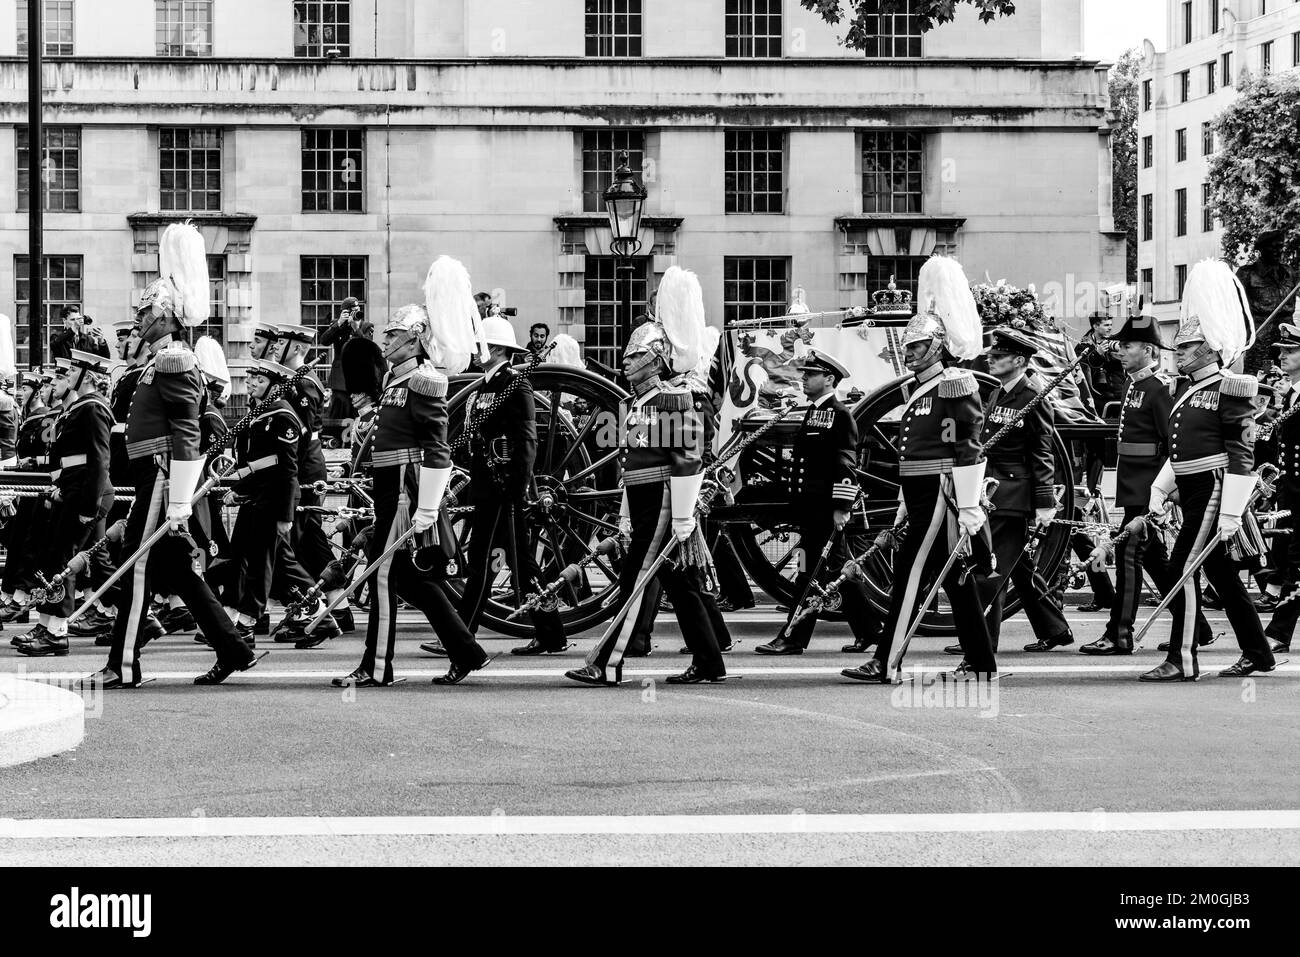 Die Trauerprozession von Königin Elizabeth II. Fährt auf dem Weg nach Wellington Arch, London, Großbritannien, Whitehall hinauf. Stockfoto